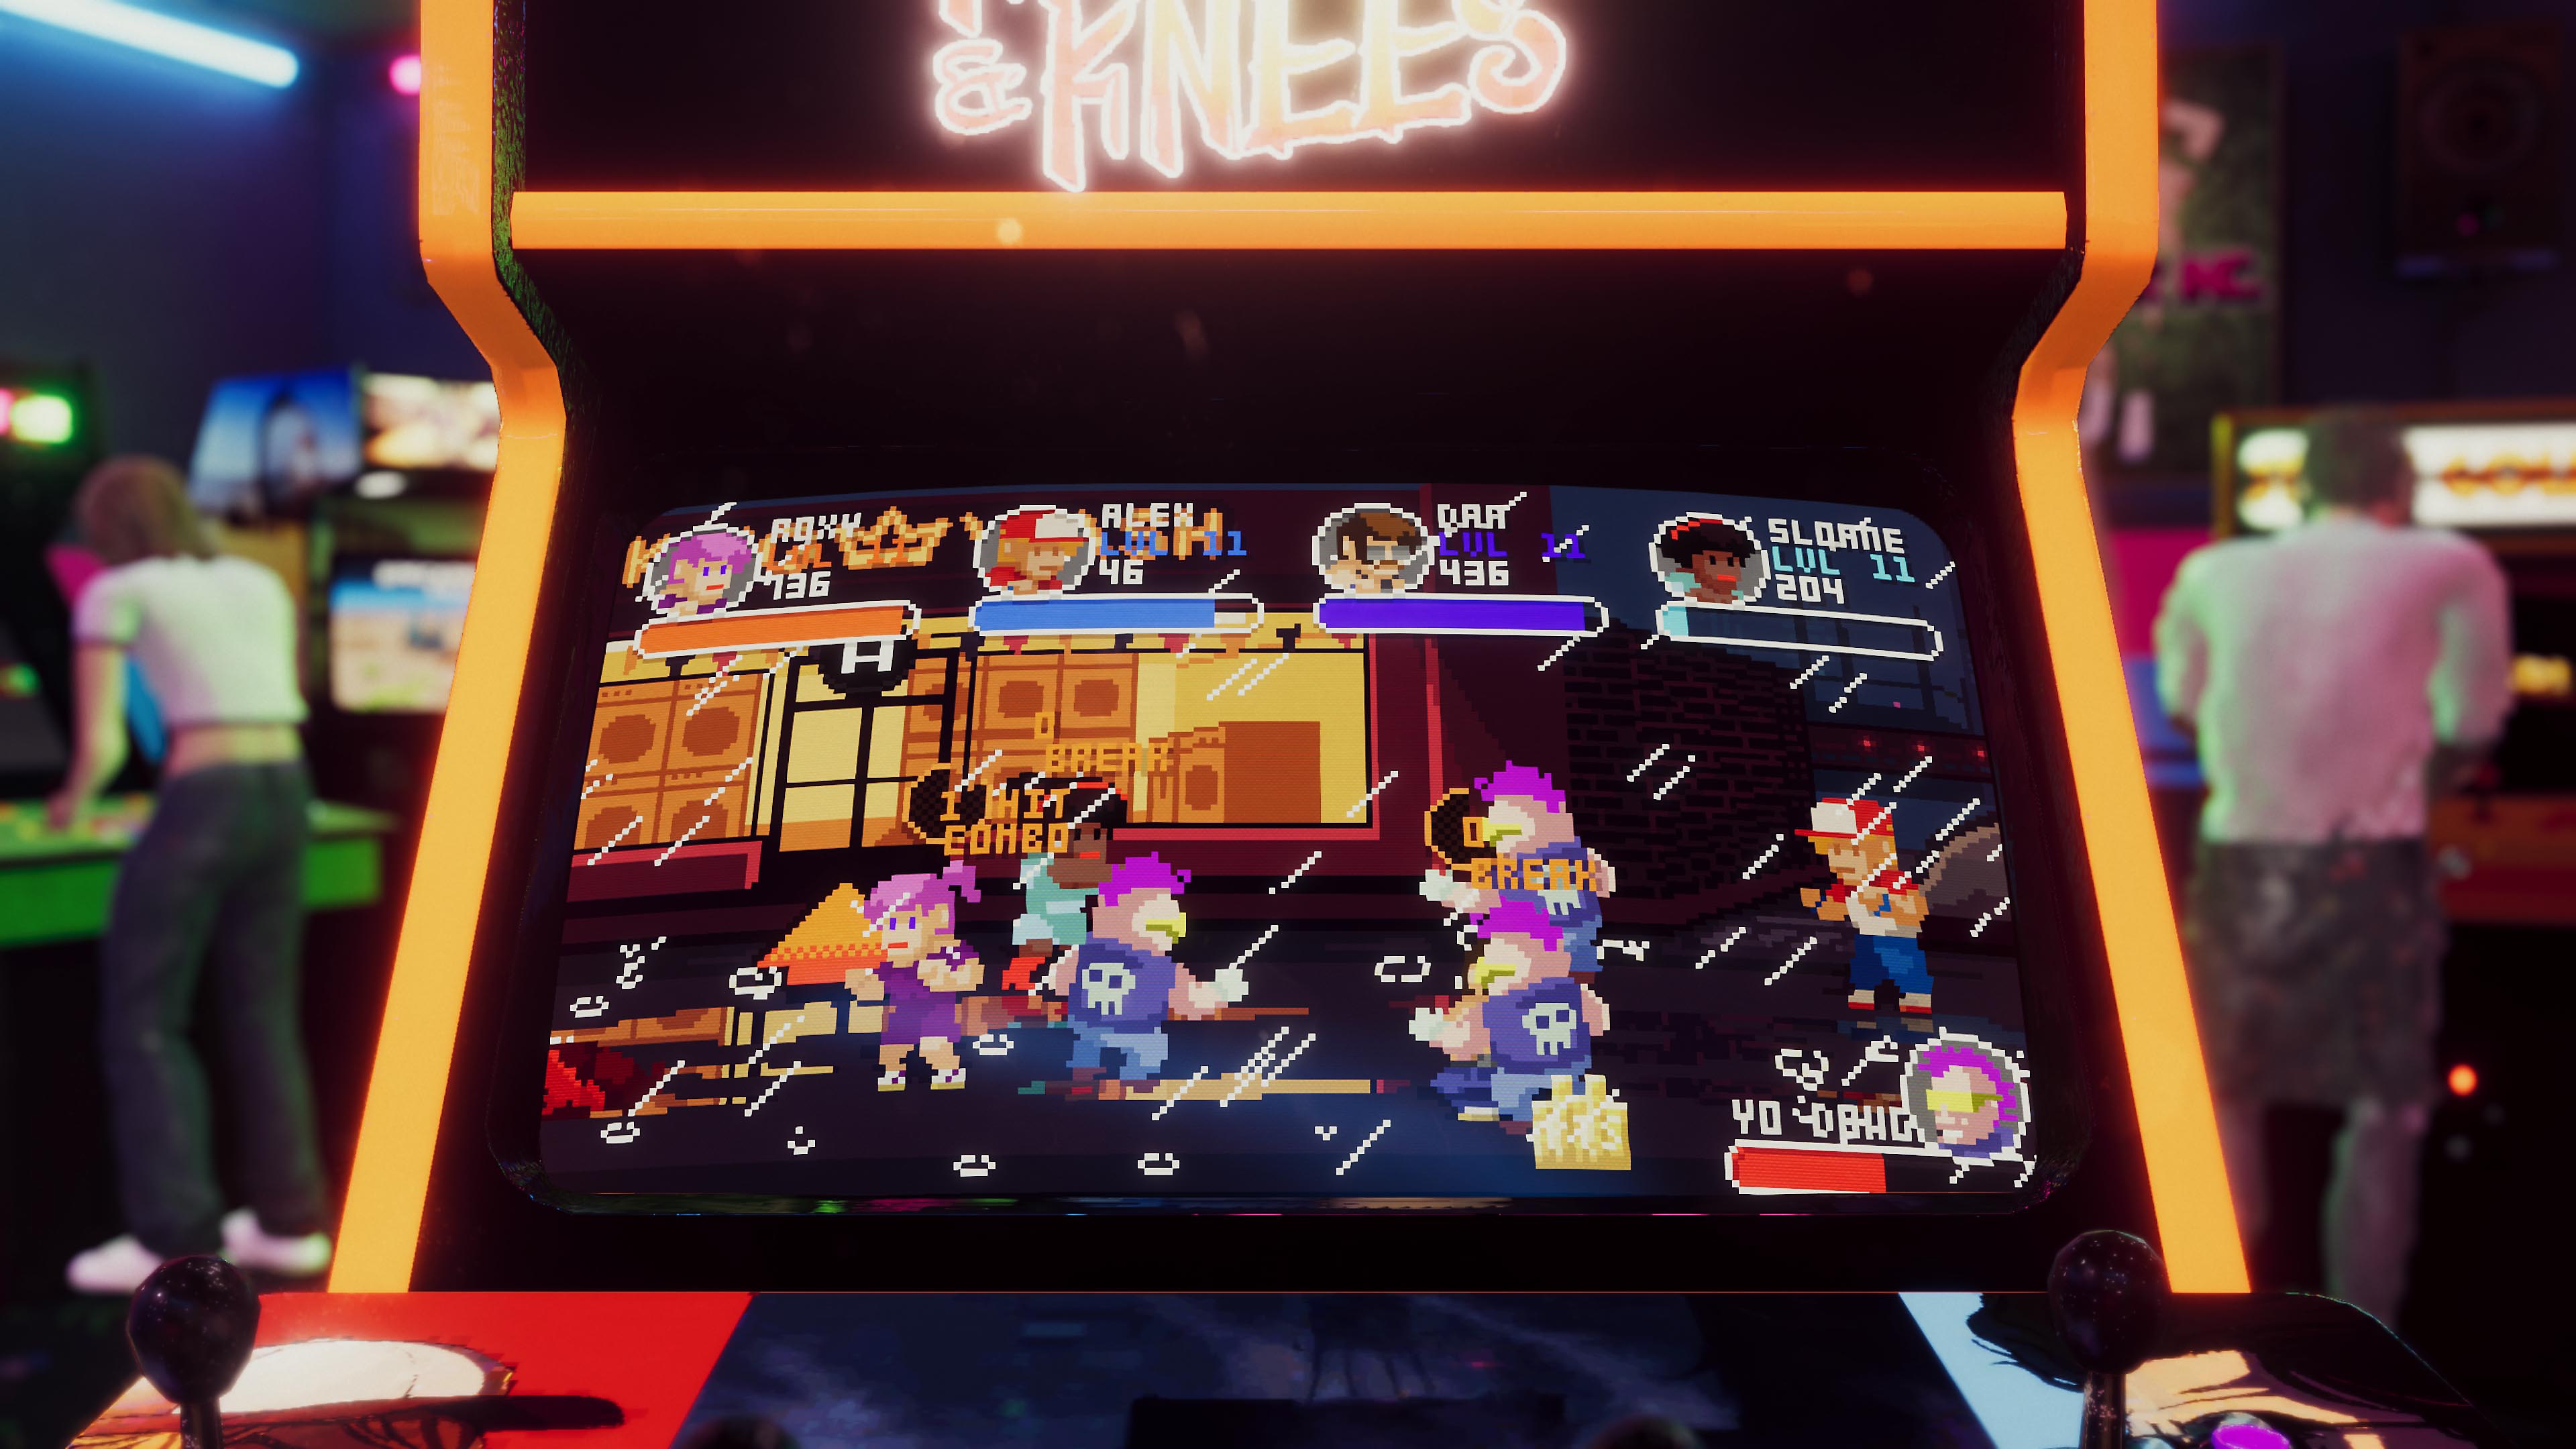 Captura de pantalla de Arcade Paradise que muestra una máquina recreativa con un juego retro